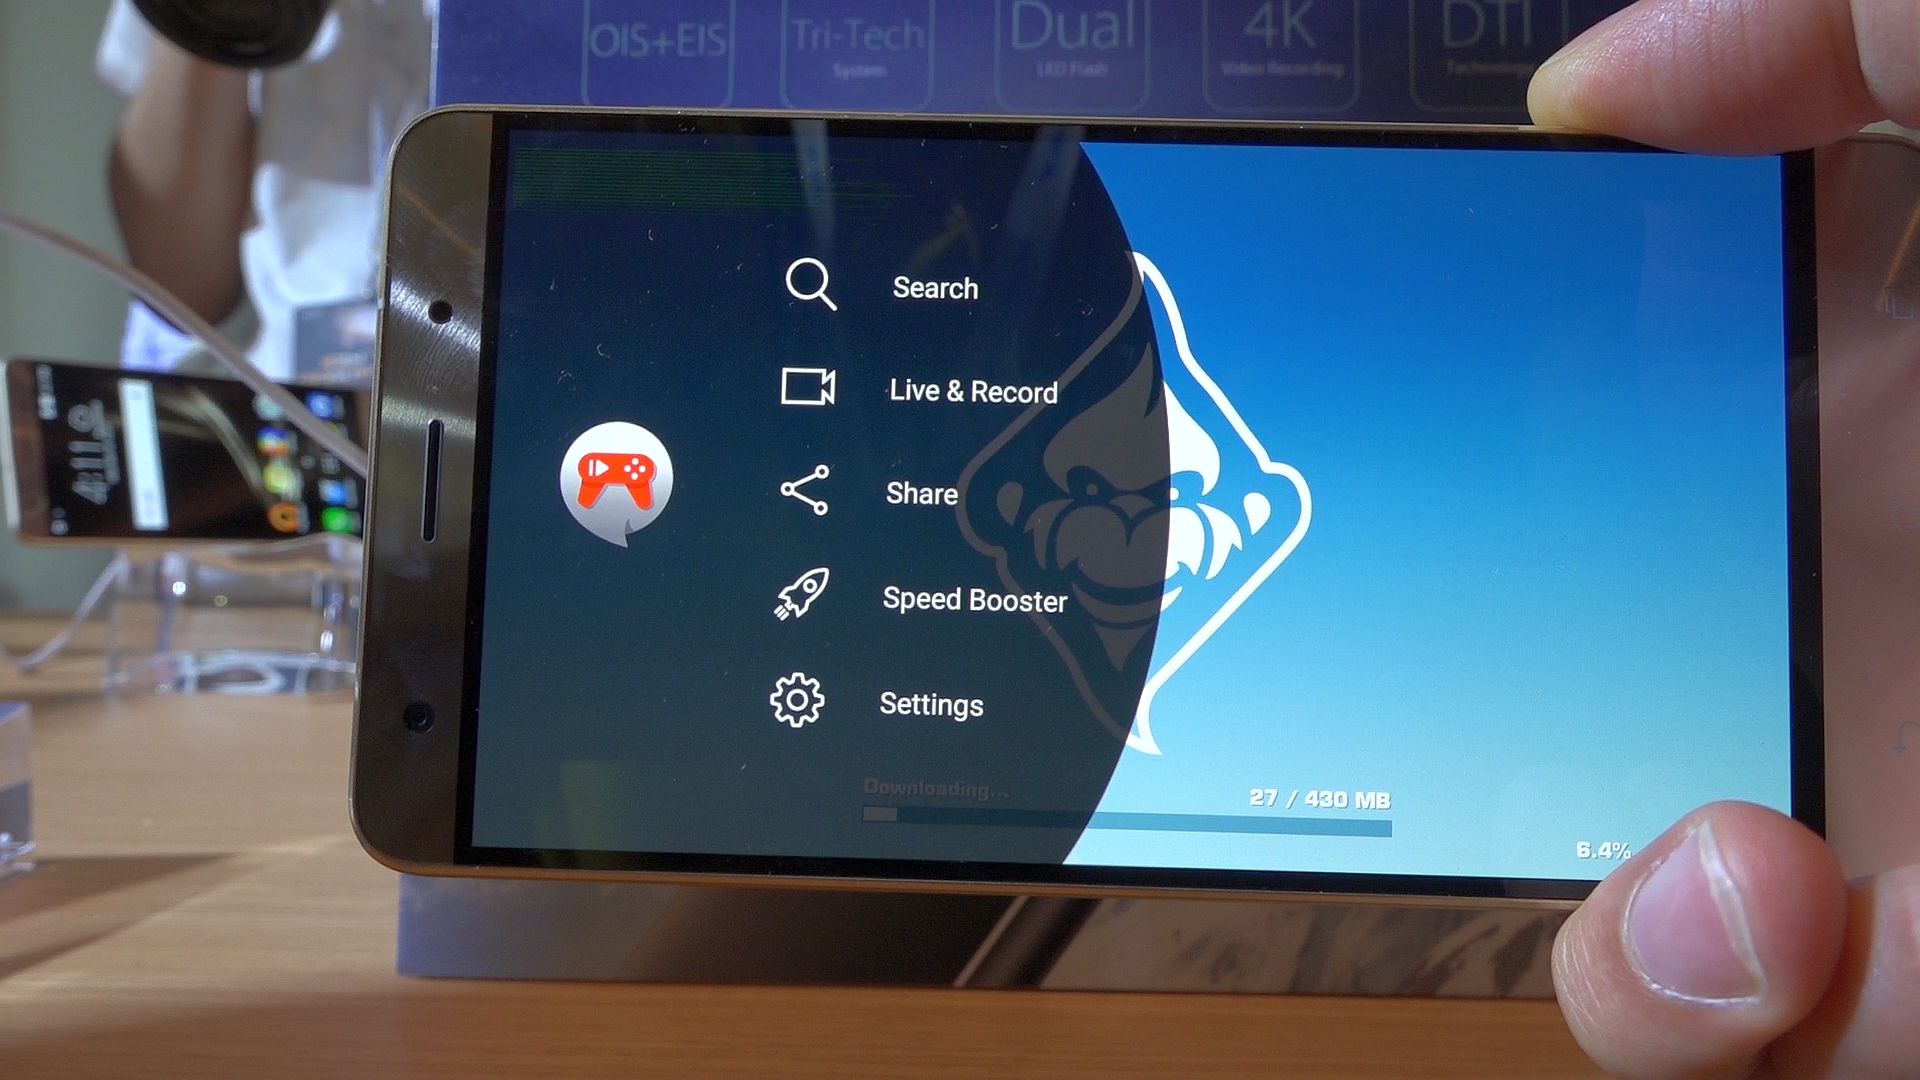 Asus ZenFone 3 Deluxe incelemesi: 'Asus telefon devlerine meydan okuyor'